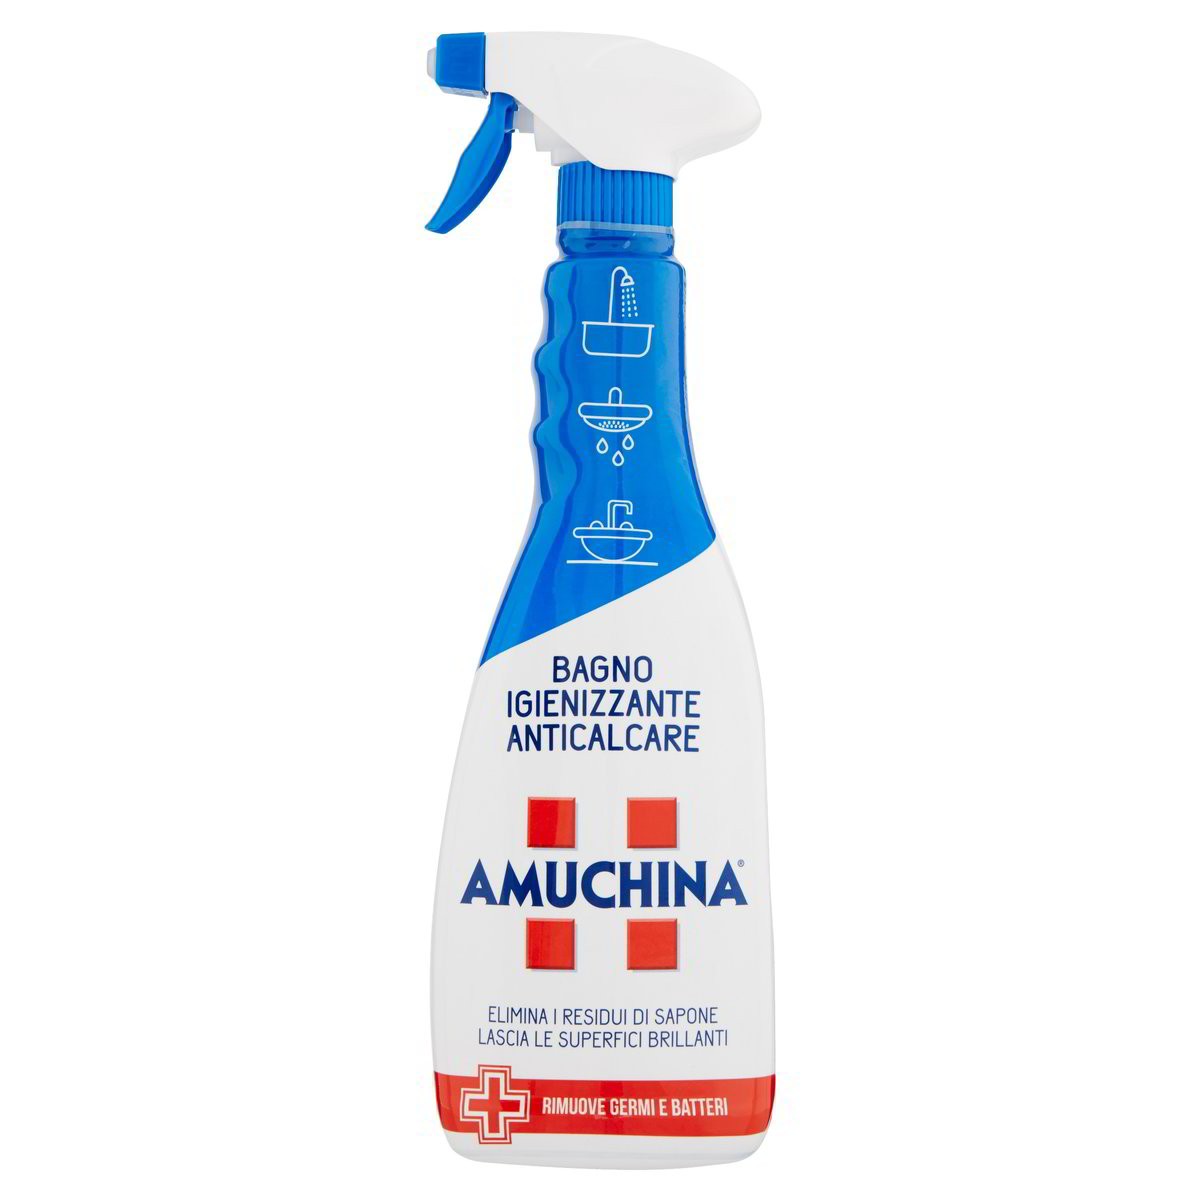 Amuchina Anticalcare igienizzante spray bagno